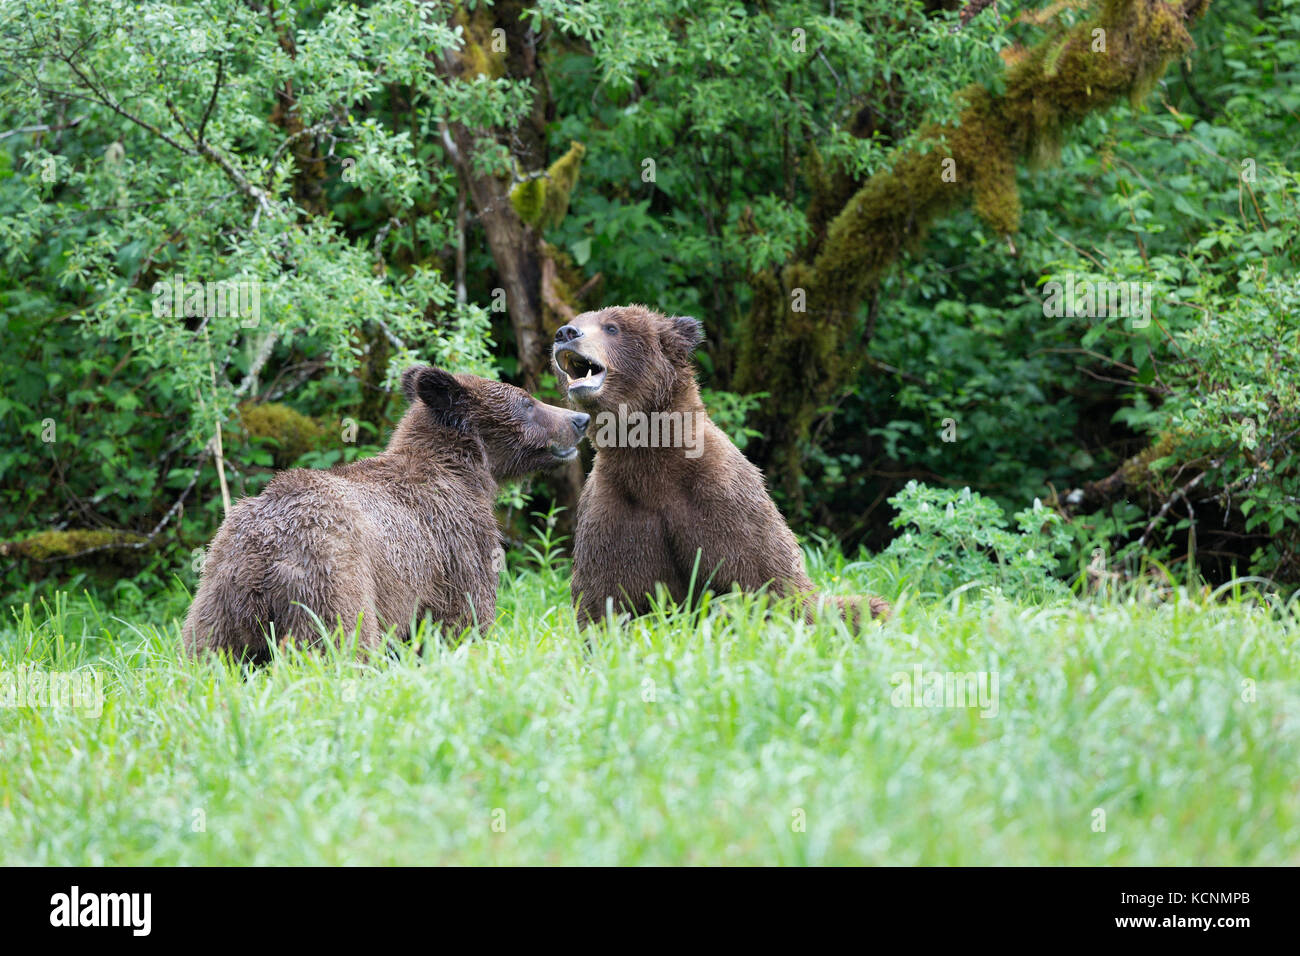 Oso grizzly (Ursus arctos horribilis), el joven macho y hembra (derecha) el cortejo, admisión, khutzeymateen khutzeymateen Grizzly Bear sanctuary, British Columbia, Canadá Foto de stock